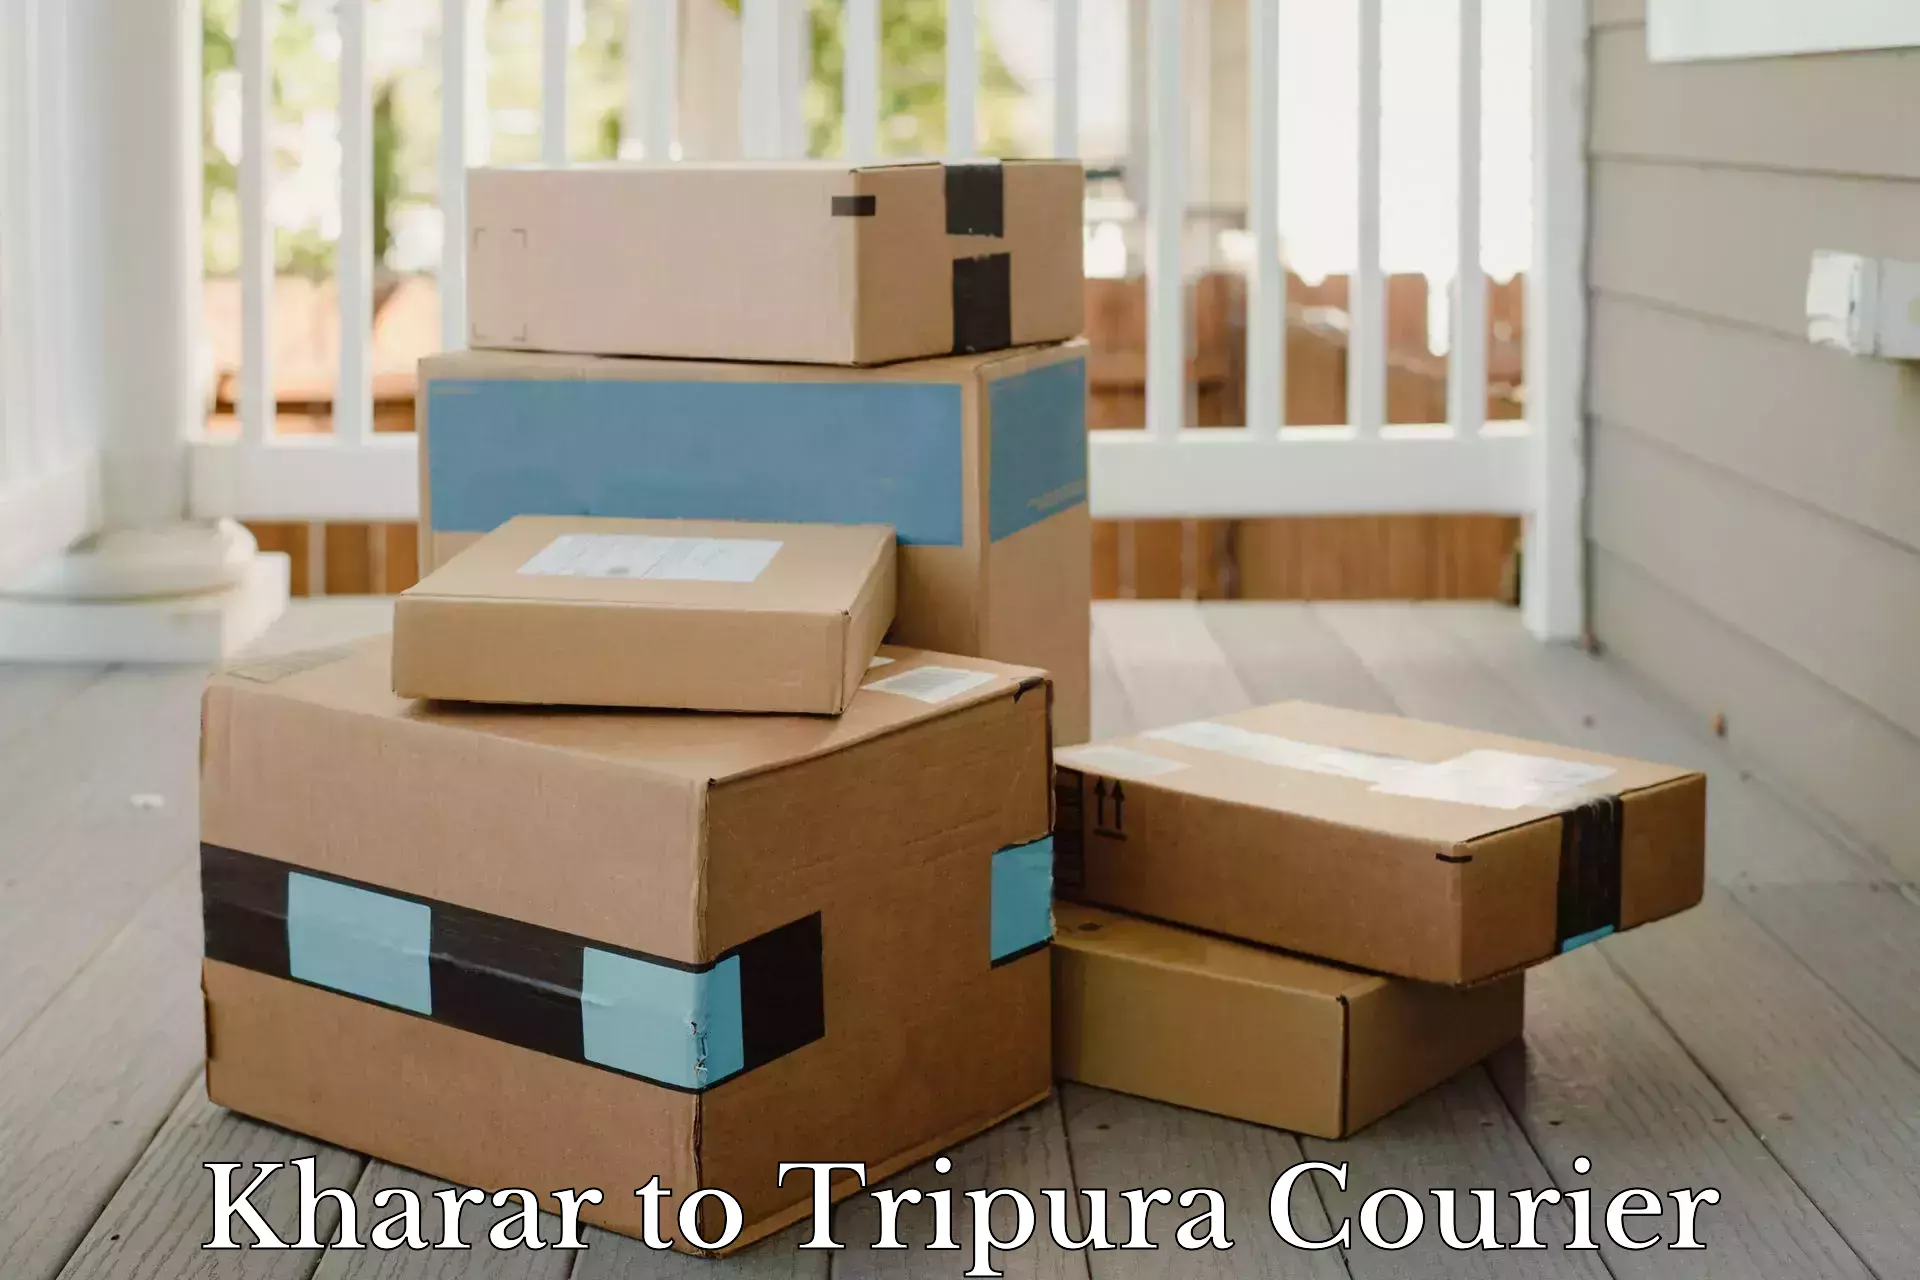 Tech-enabled shipping Kharar to IIIT Agartala